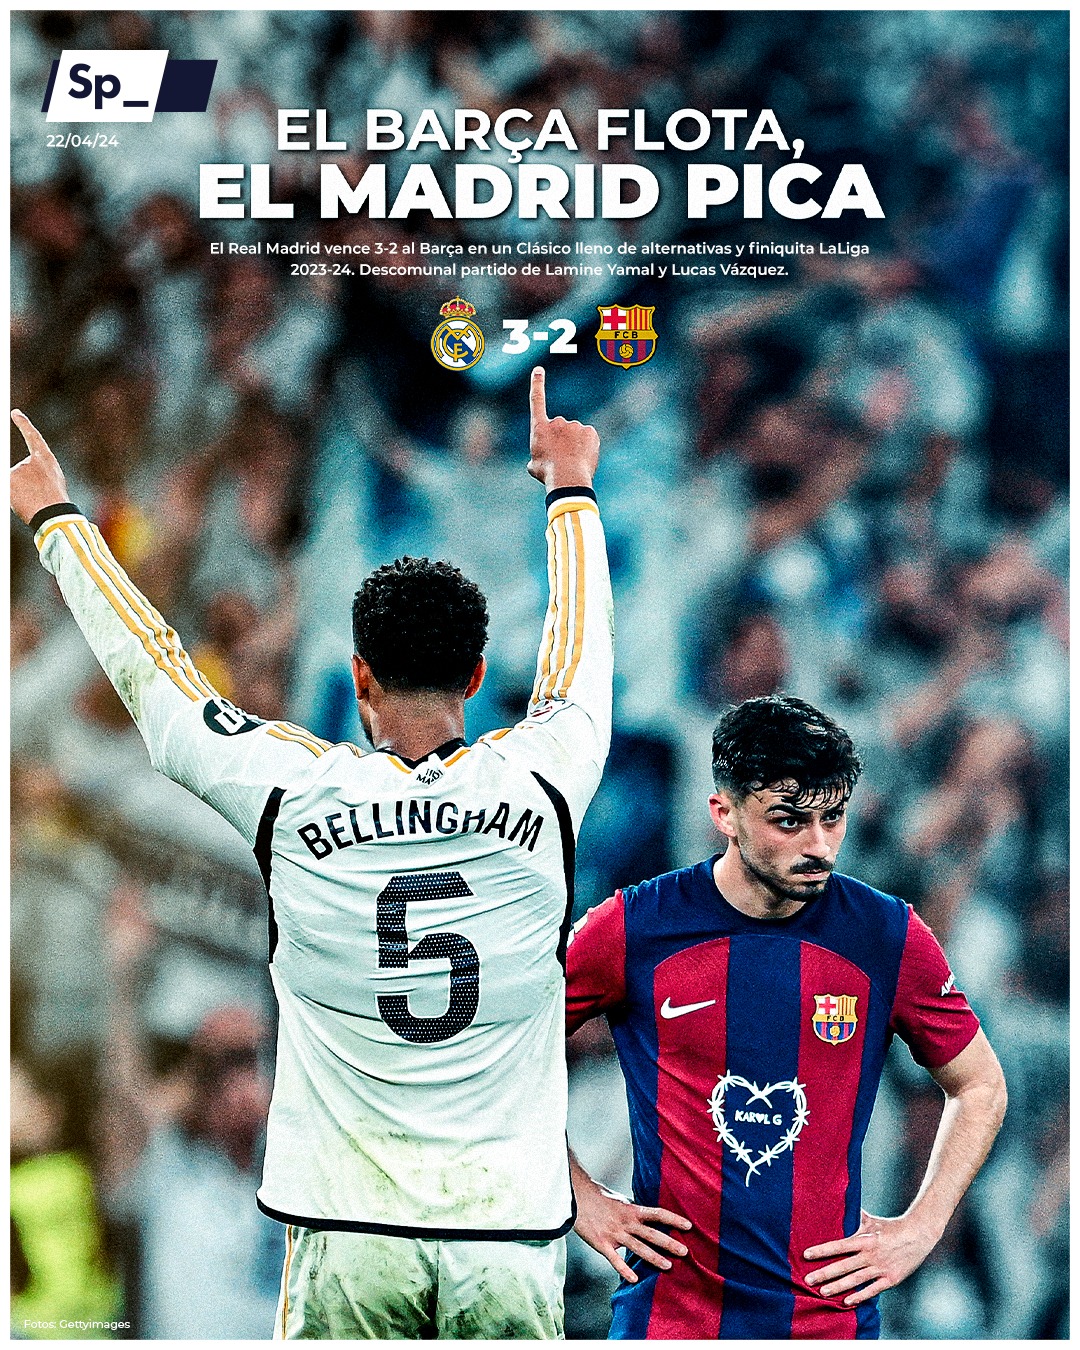 ‘El Barça flota, el Madrid pica’